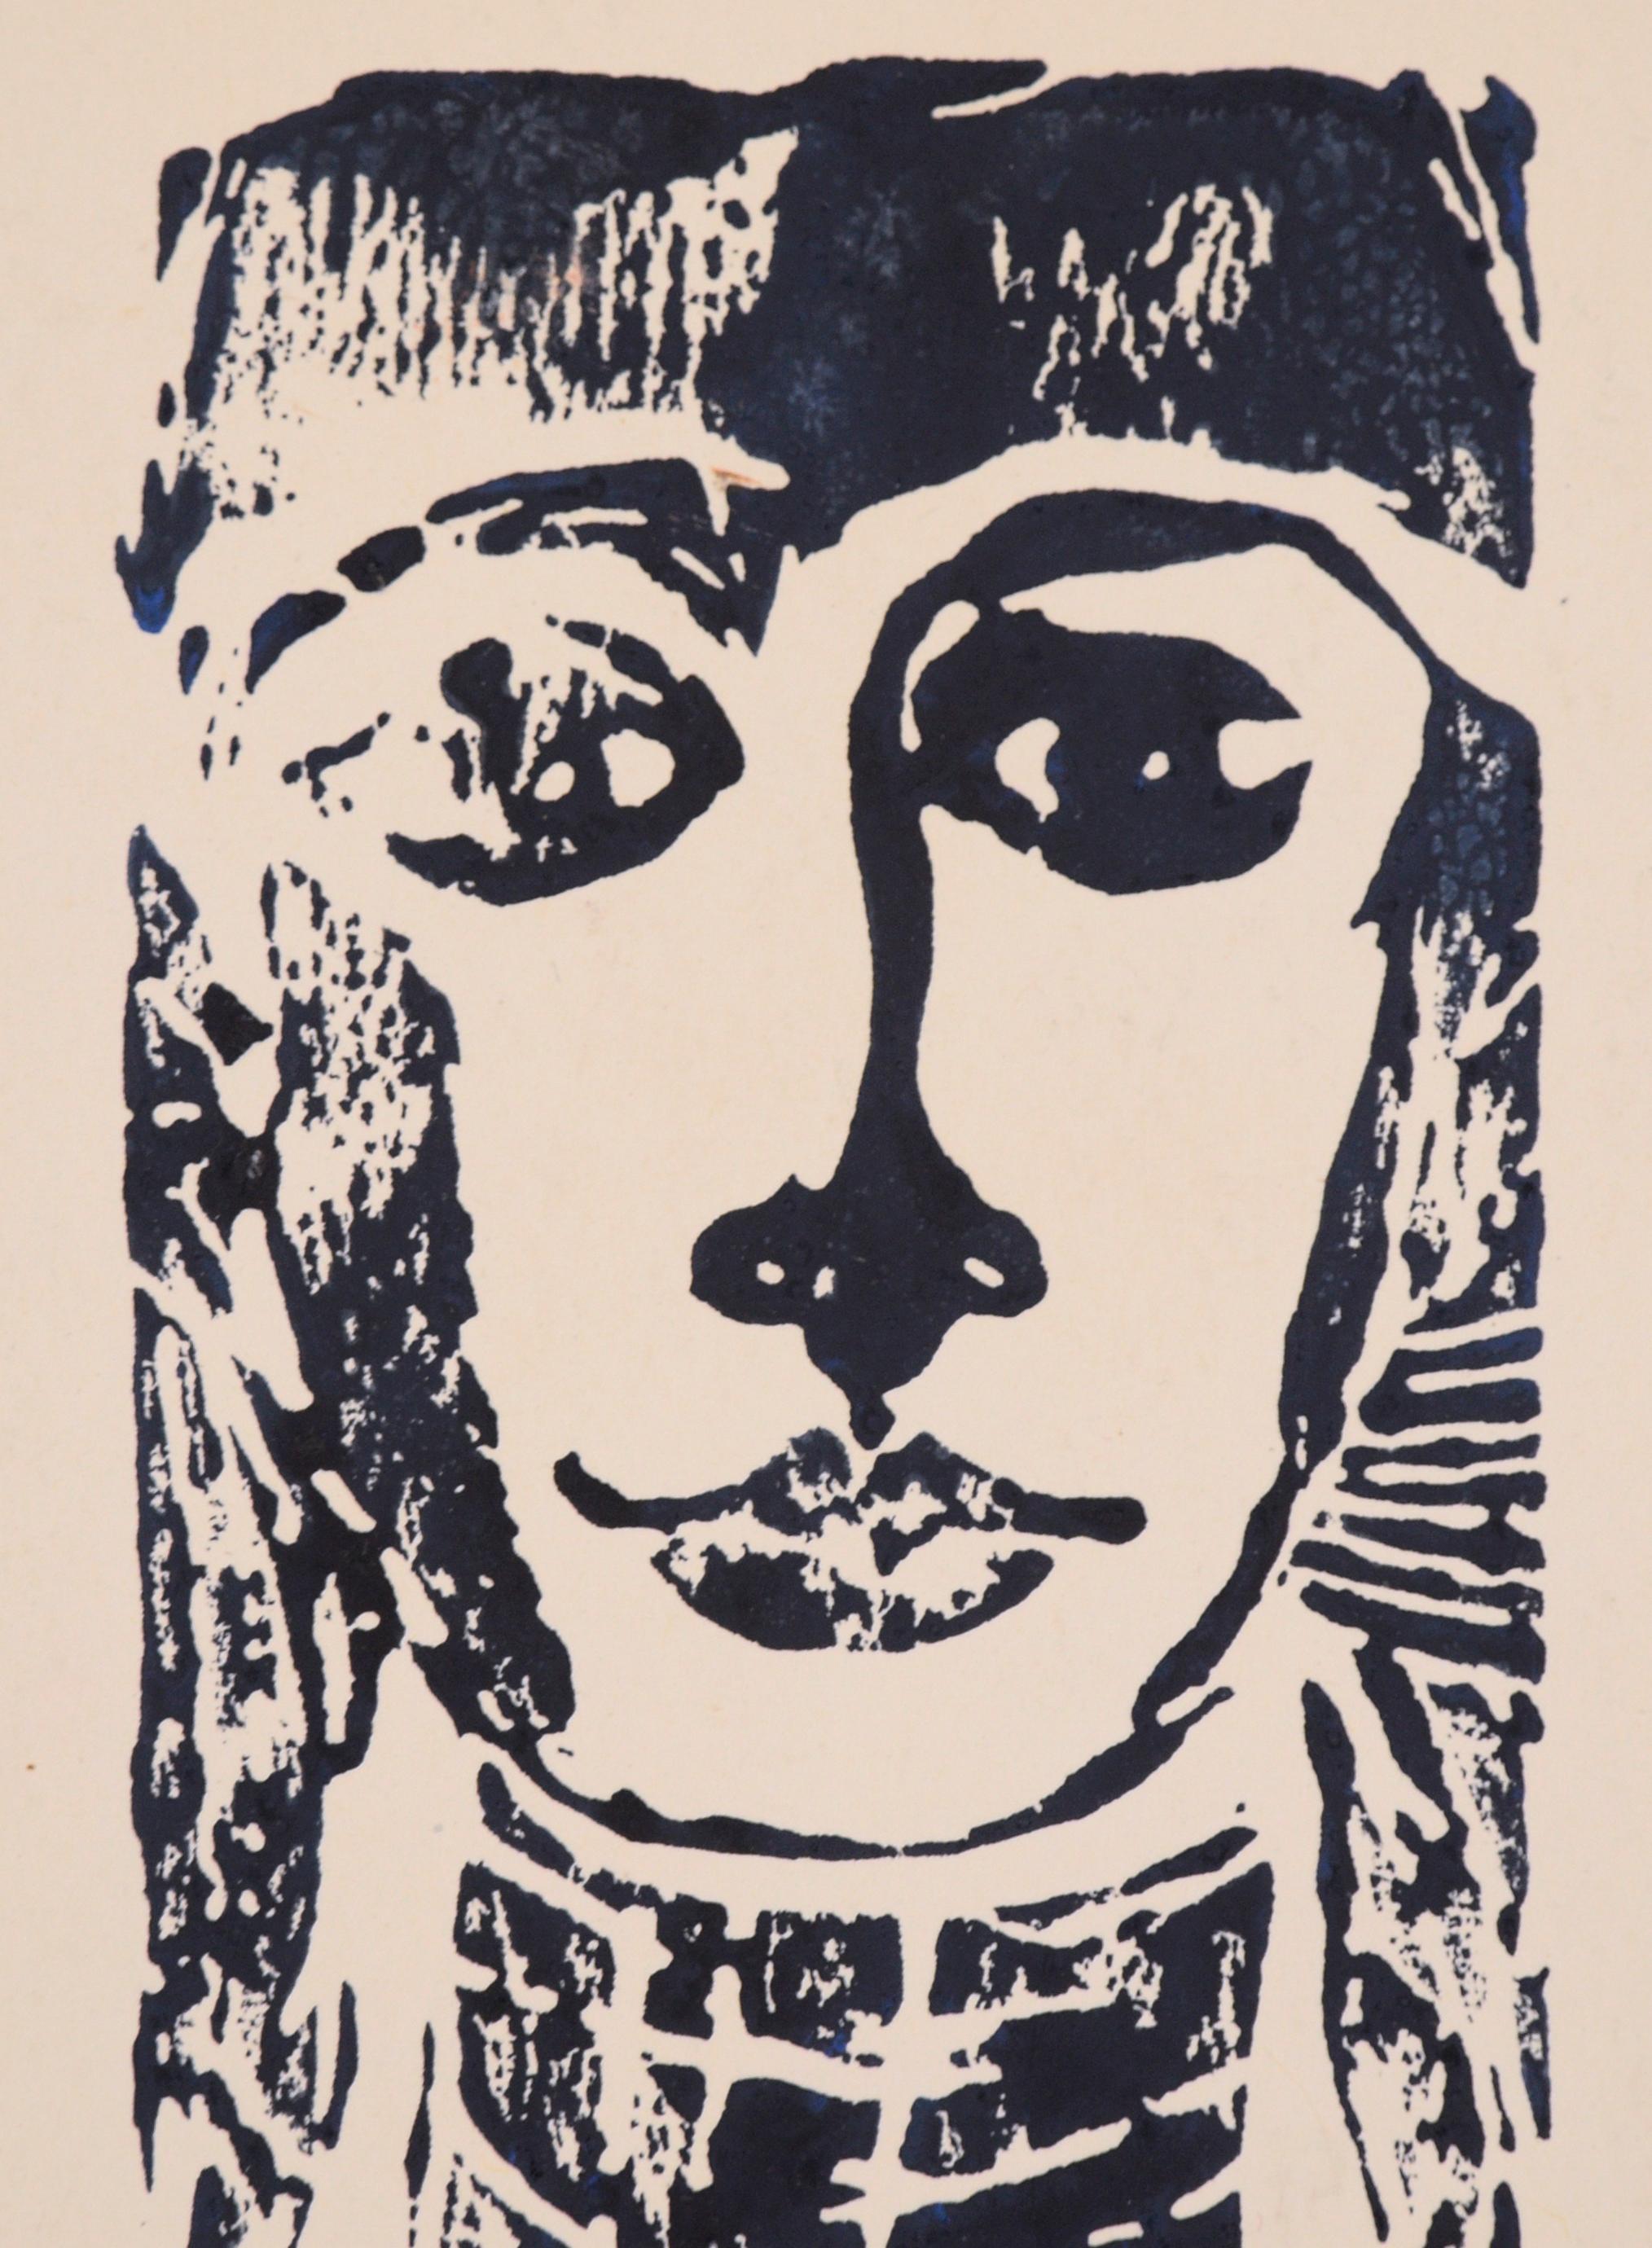 Portrait de femme sur bois - Moderne Print par J. Duffy